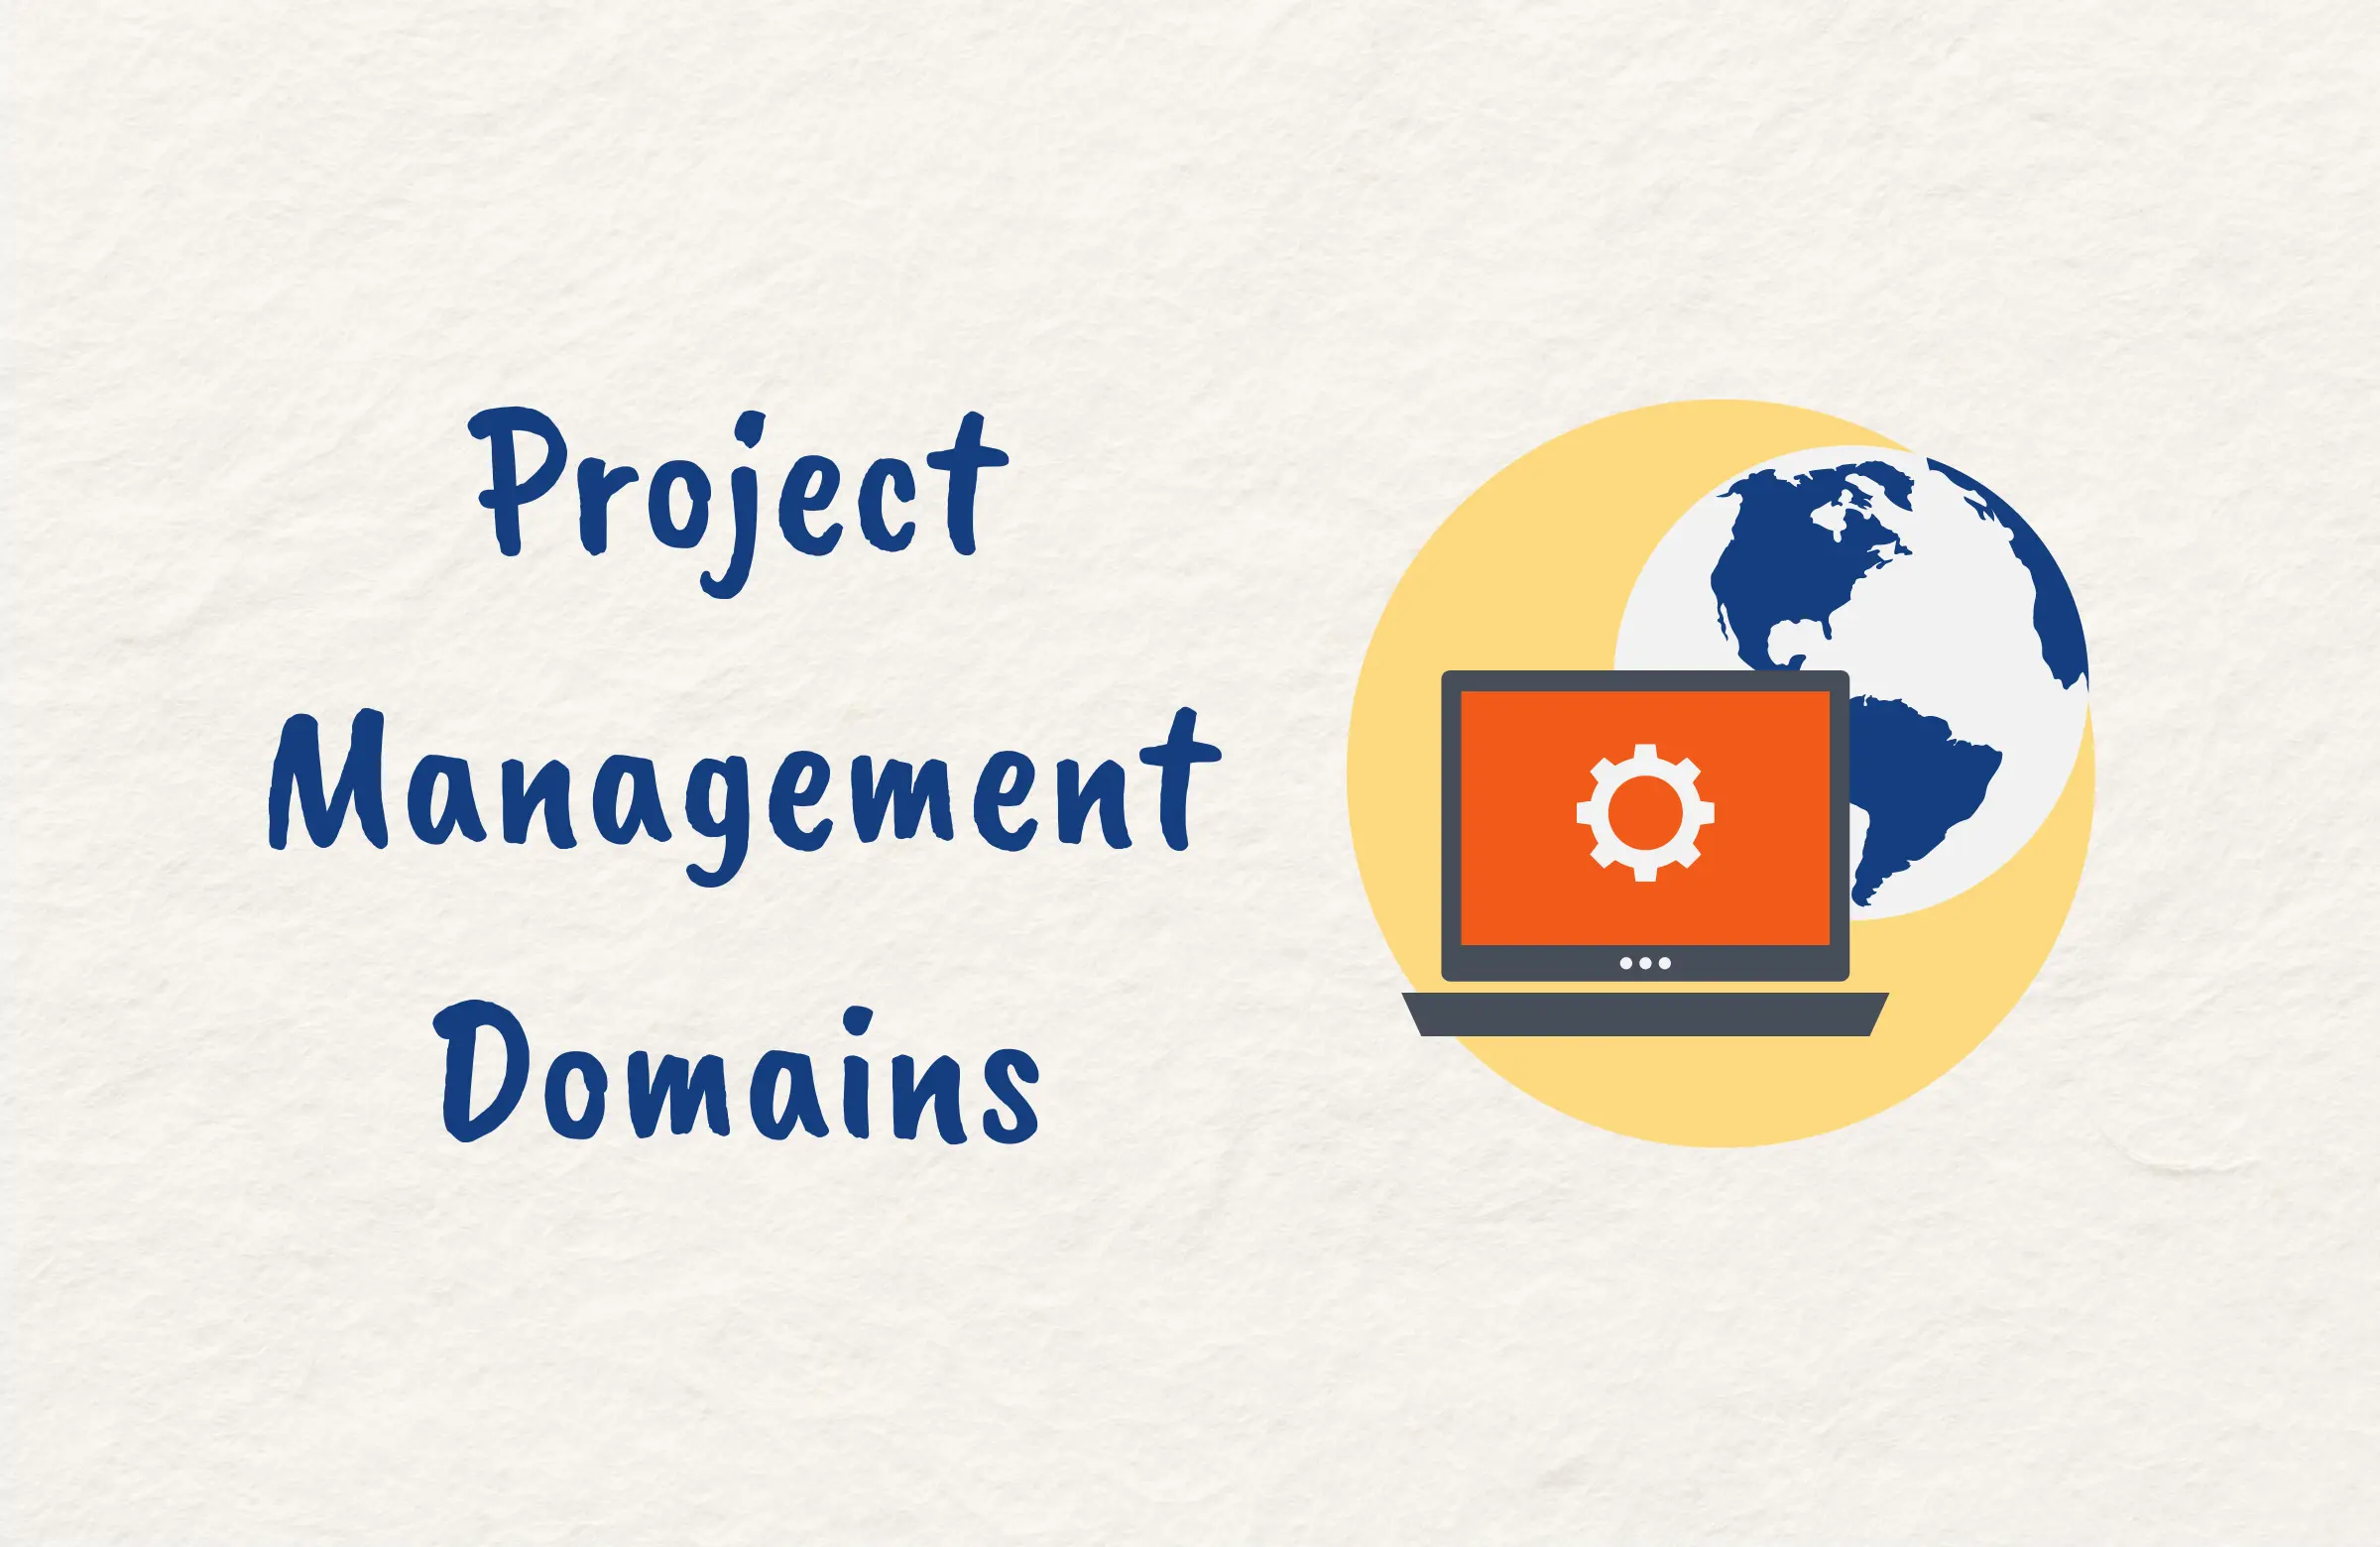 Project Management Domains